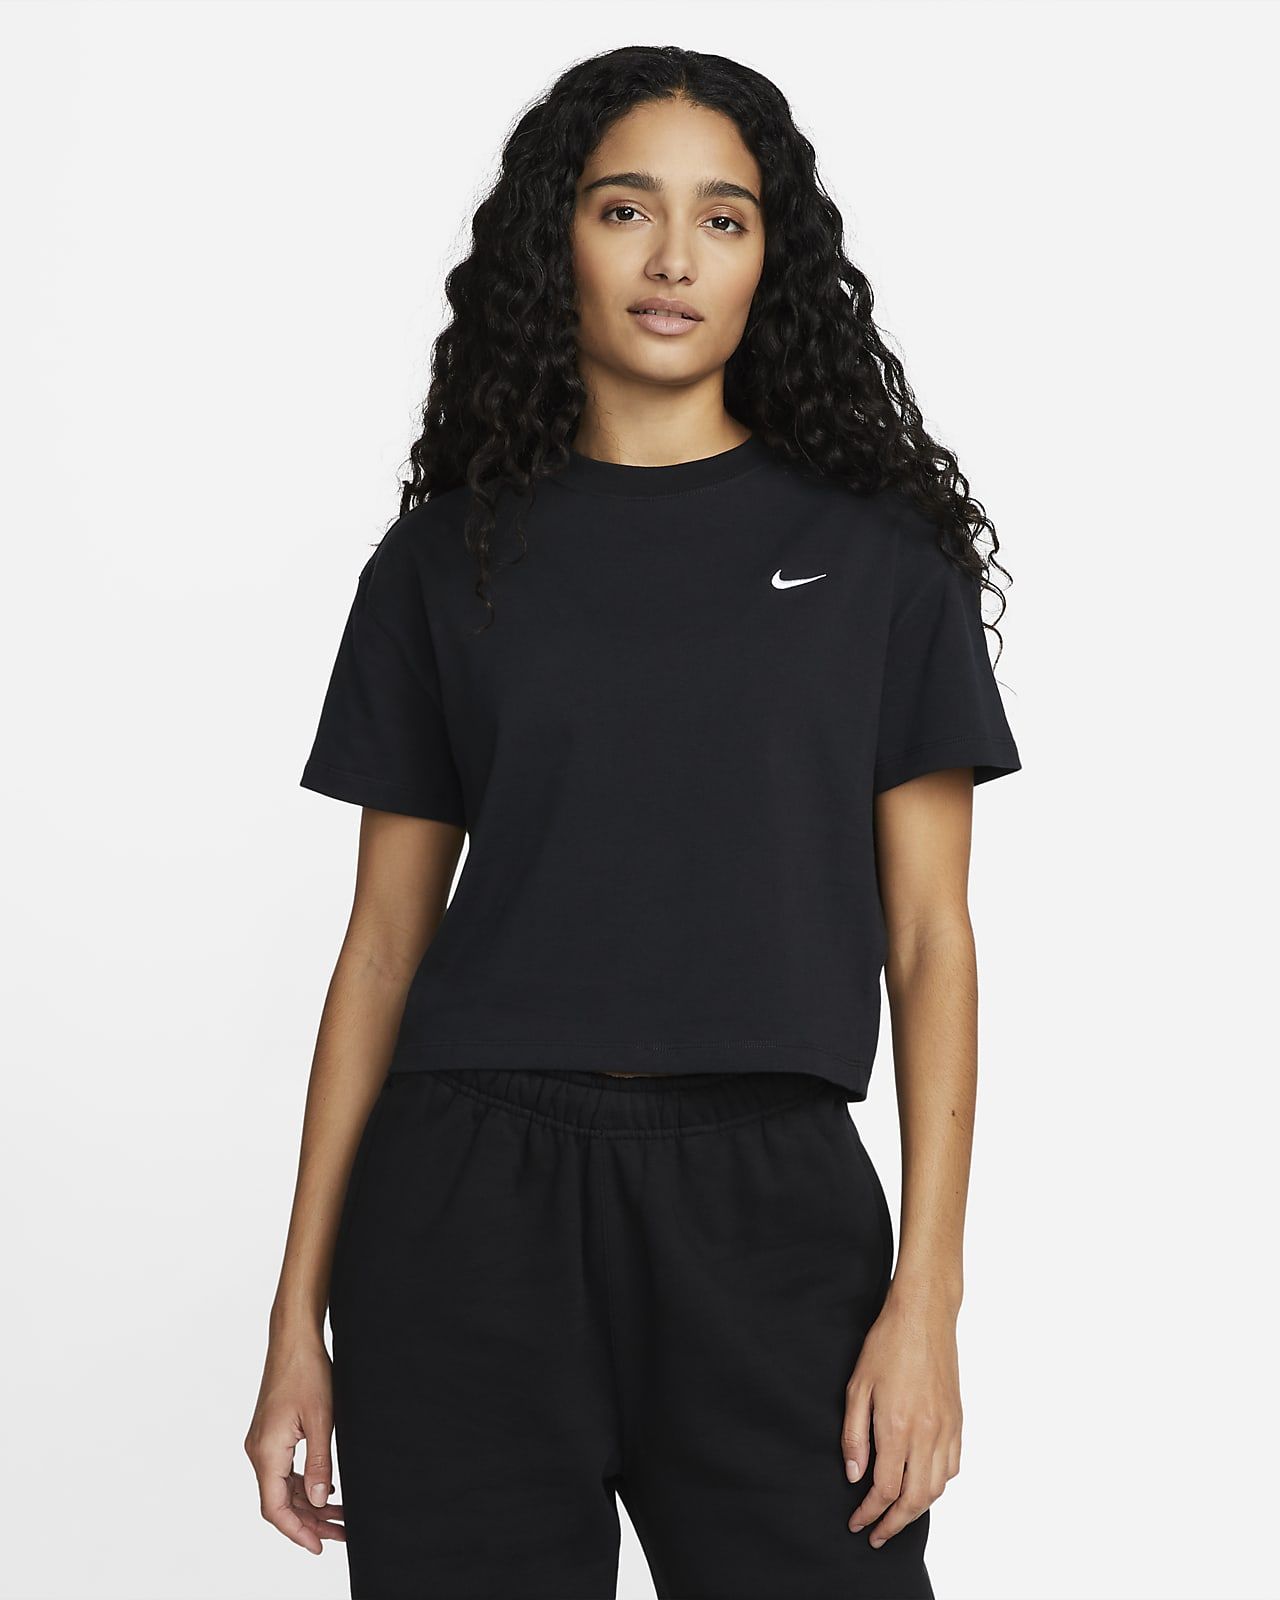 Nike Solo Swoosh Women's T-Shirt. Nike.com | Nike (US)